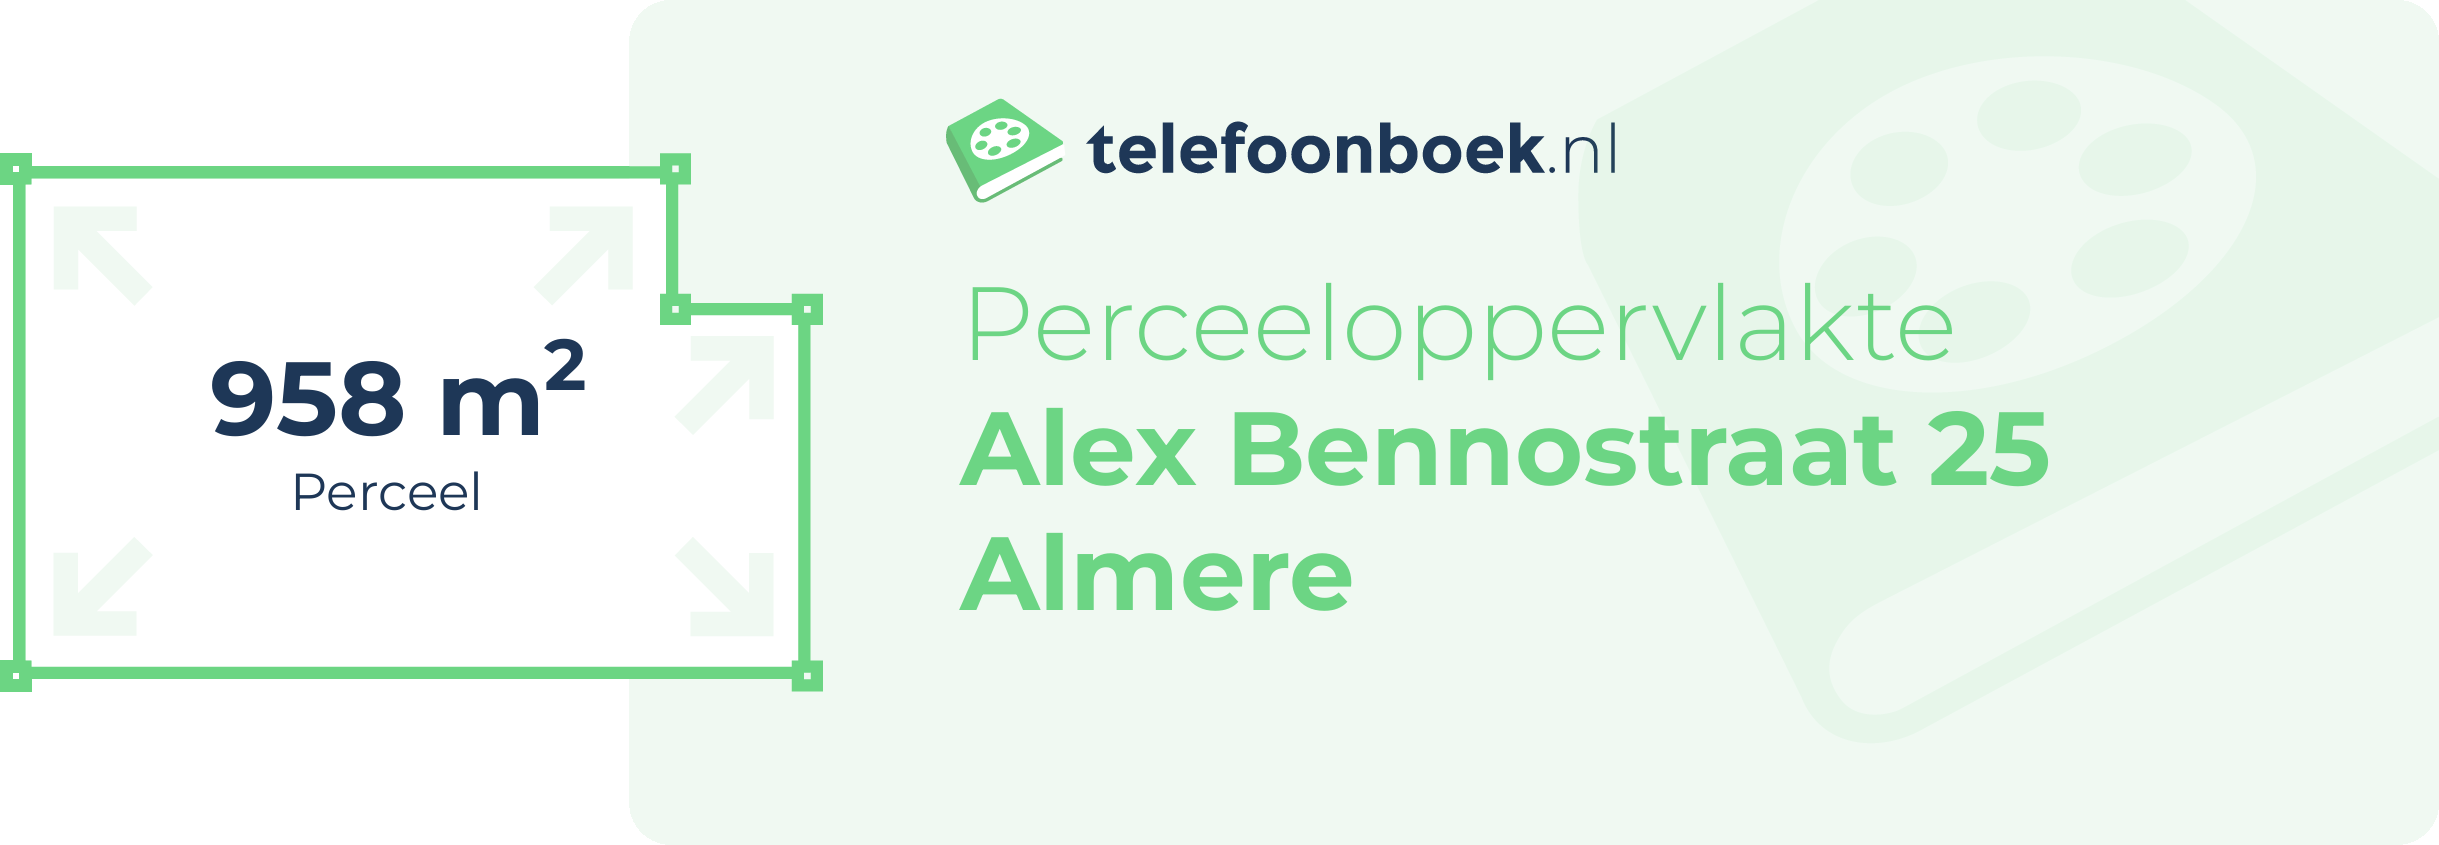 Perceeloppervlakte Alex Bennostraat 25 Almere